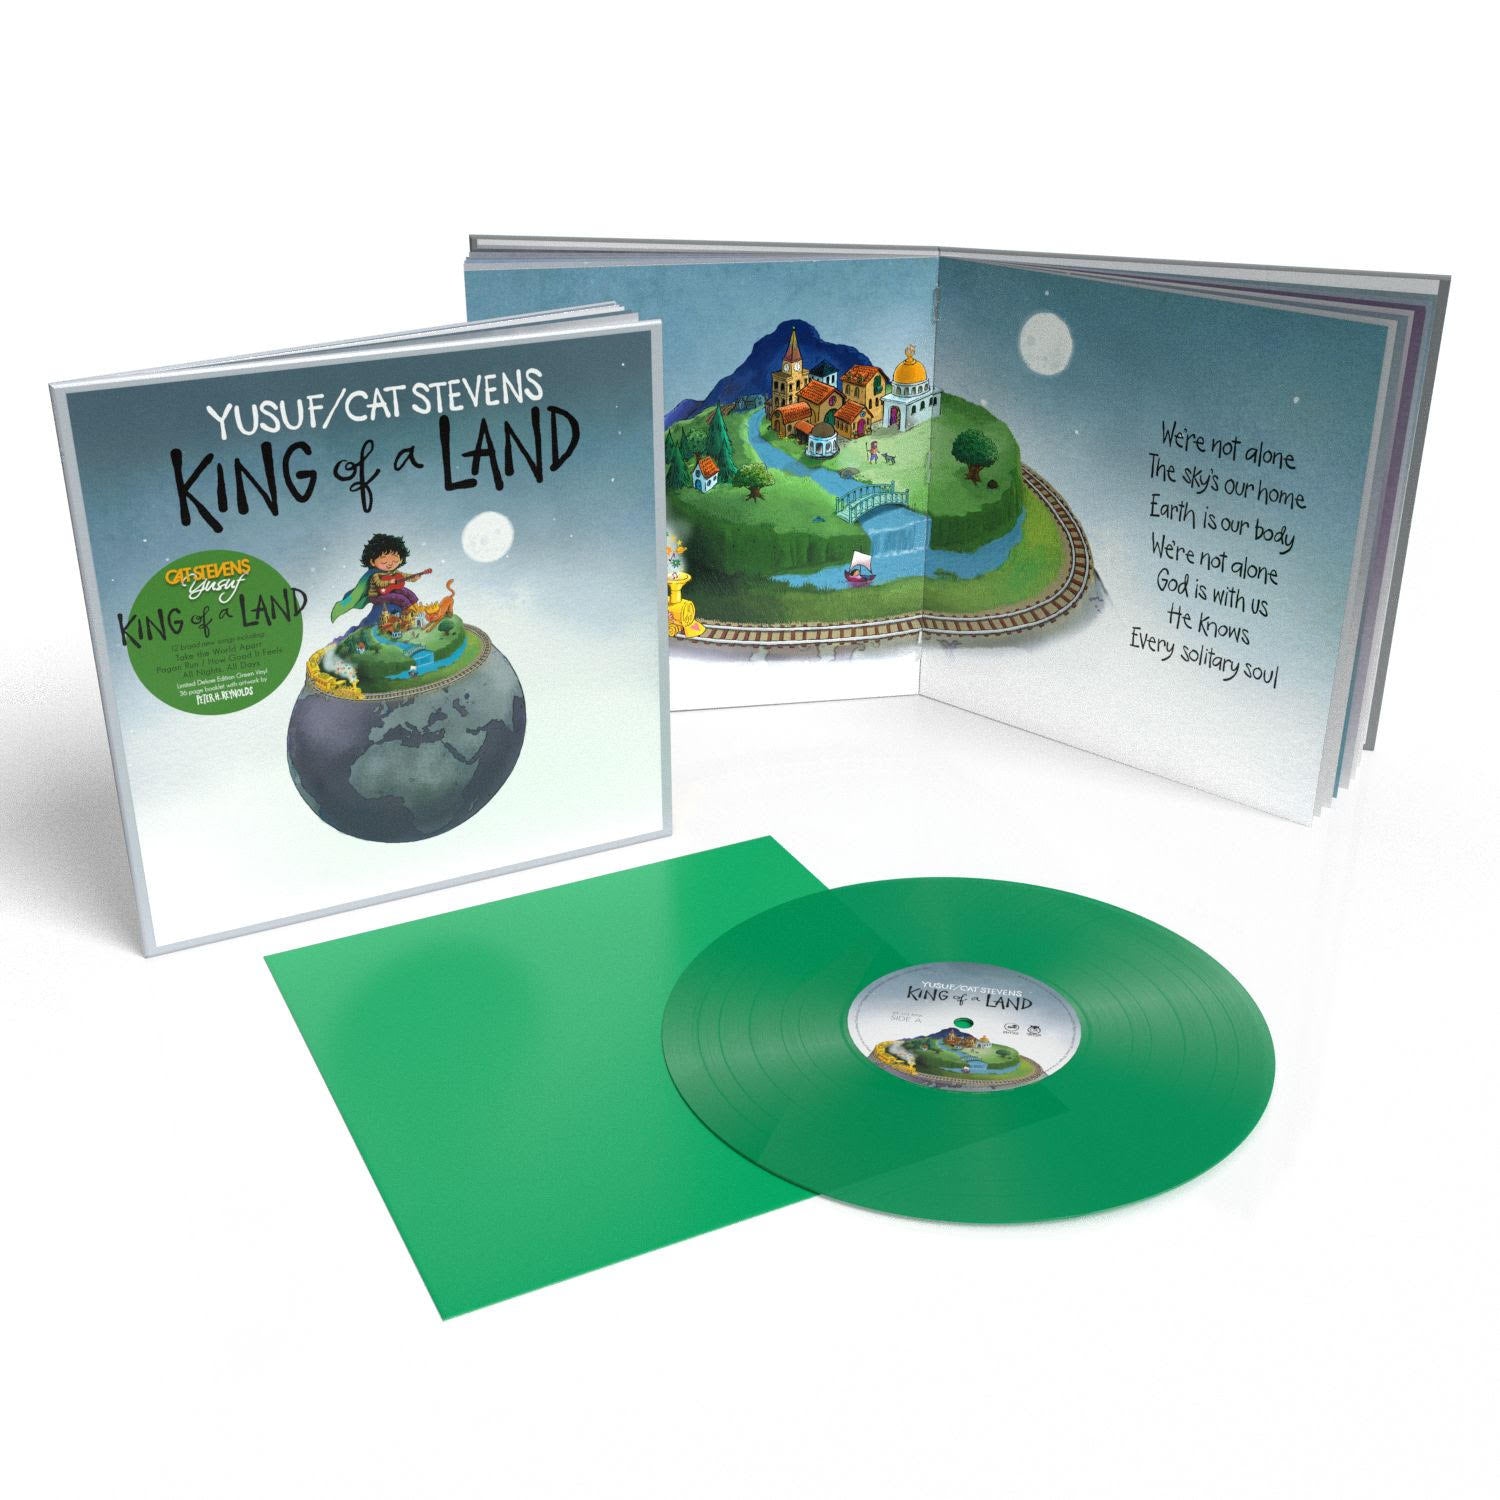 Yusuf/Cat Stevens King of a Land Ltd Green Vinyl - Ireland Vinyl